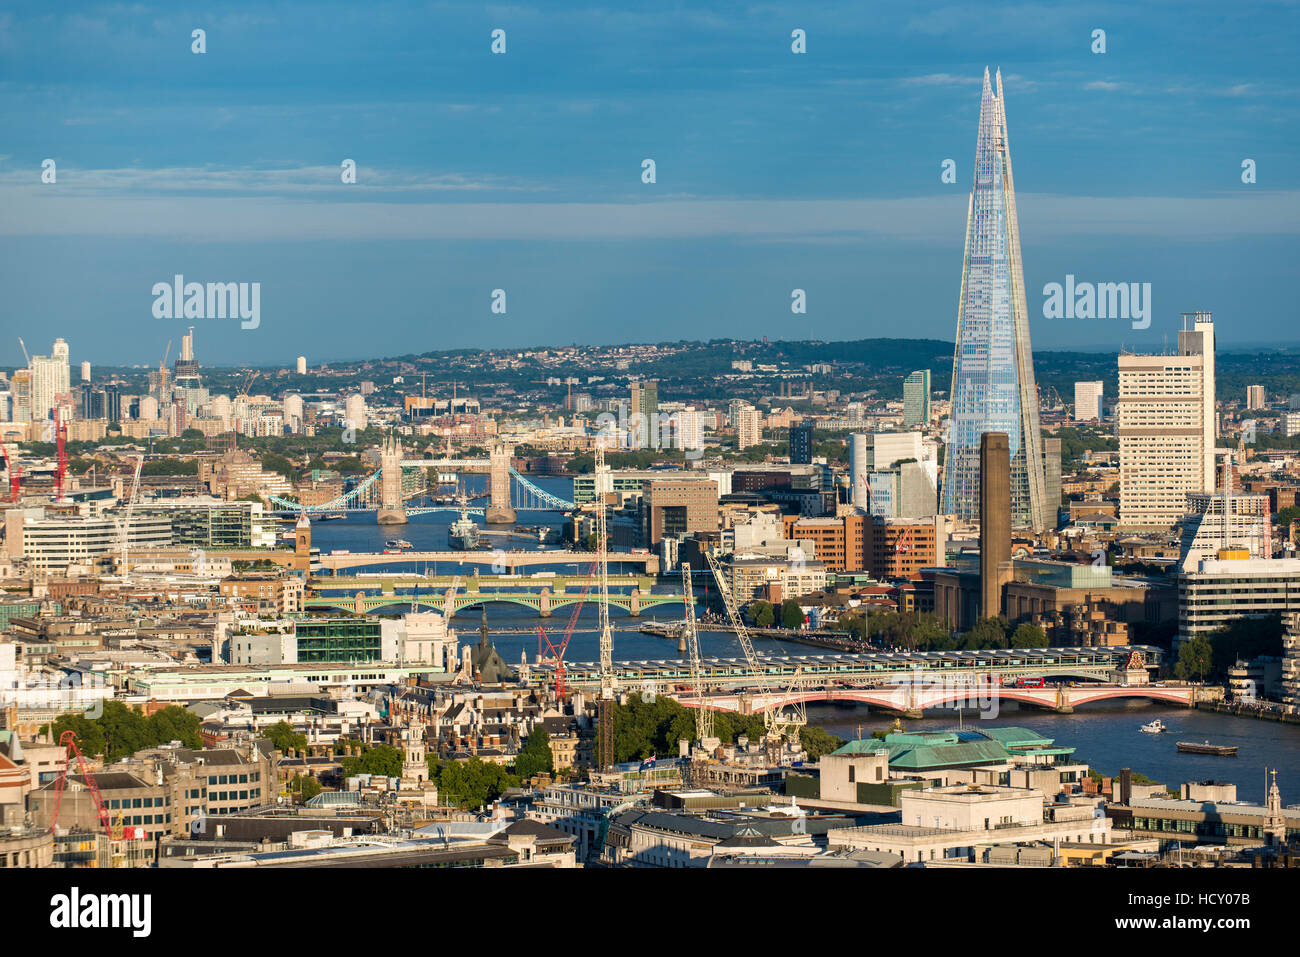 Ein Blick auf London und die Themse, darunter The Shard, Tate Modern und Tower Bridge, London, UK Stockfoto